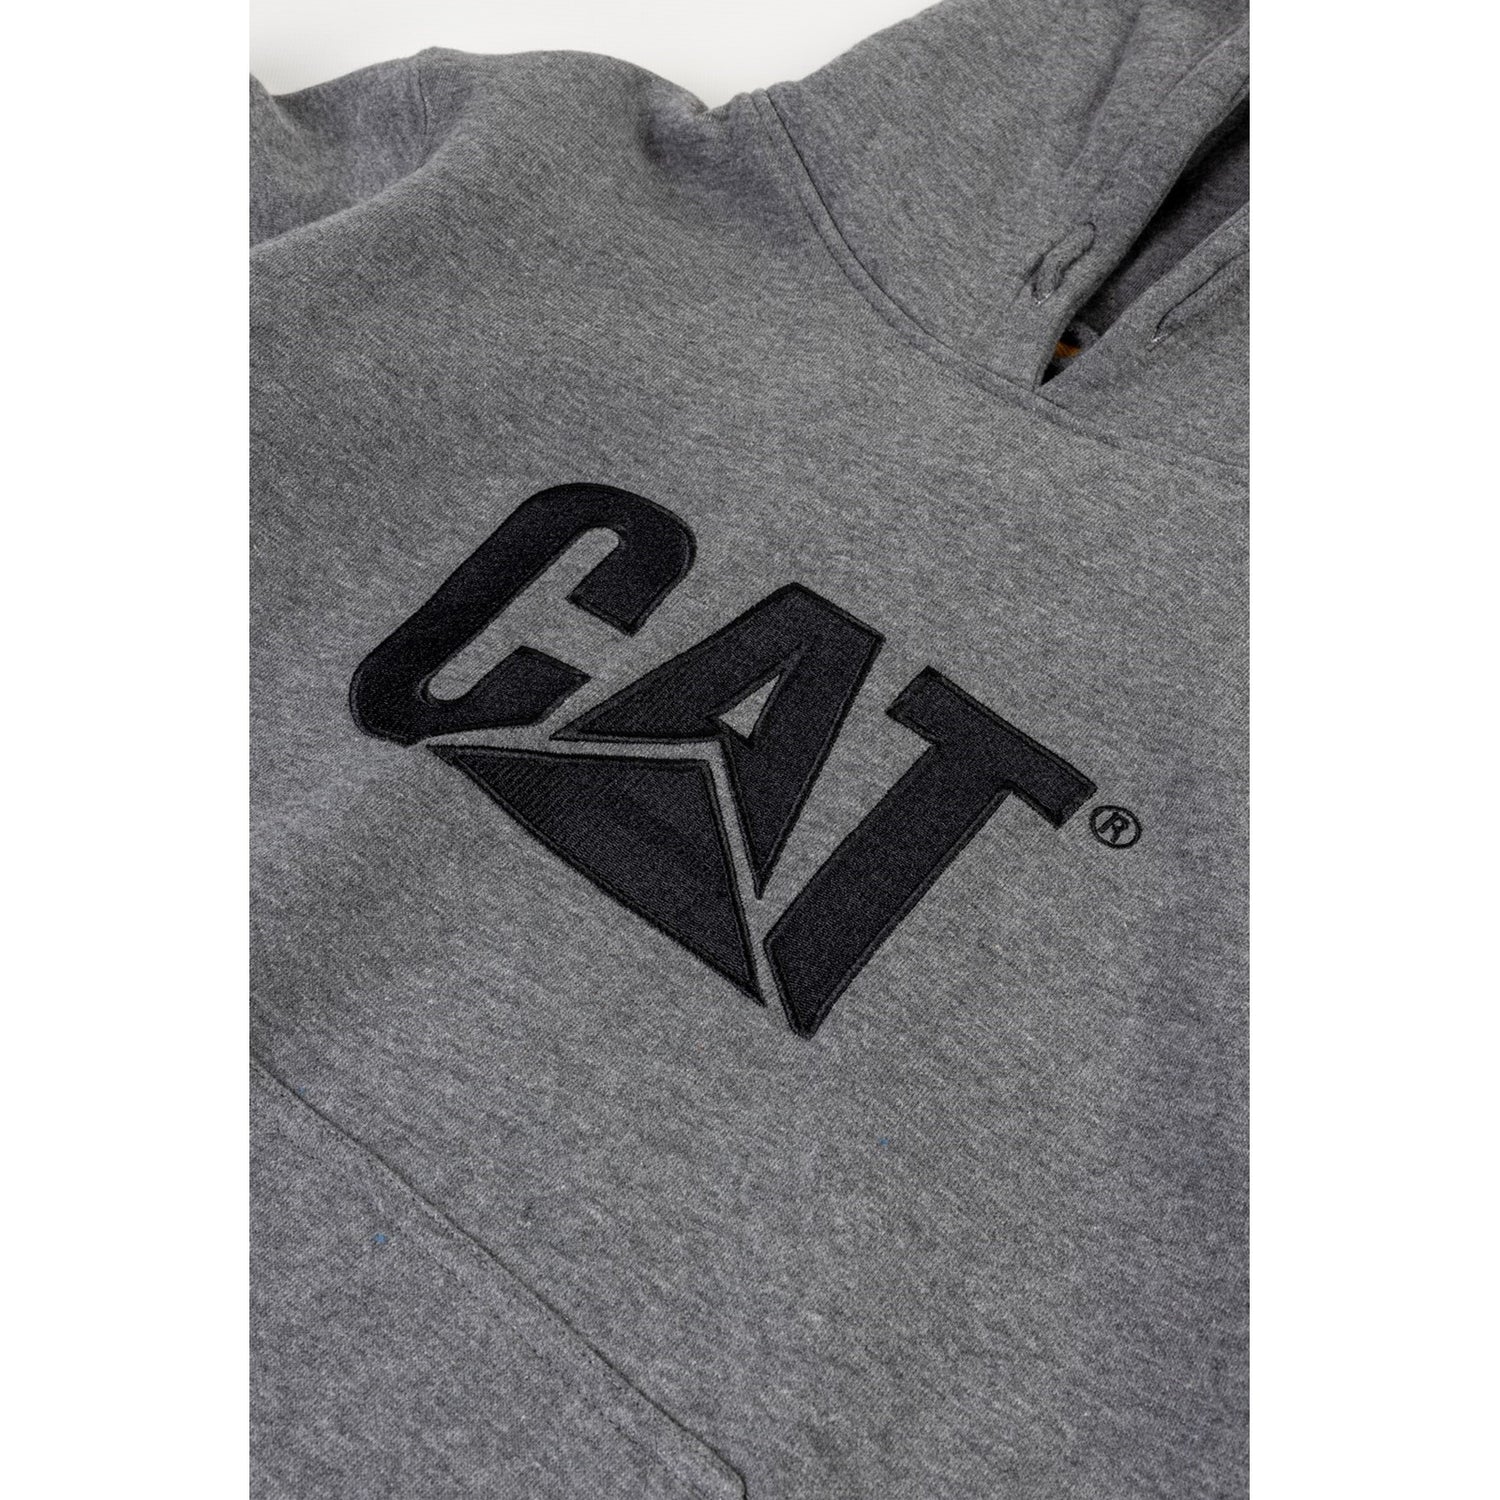 Caterpillar Trademark Hooded Sweatshirt in Heather Grey